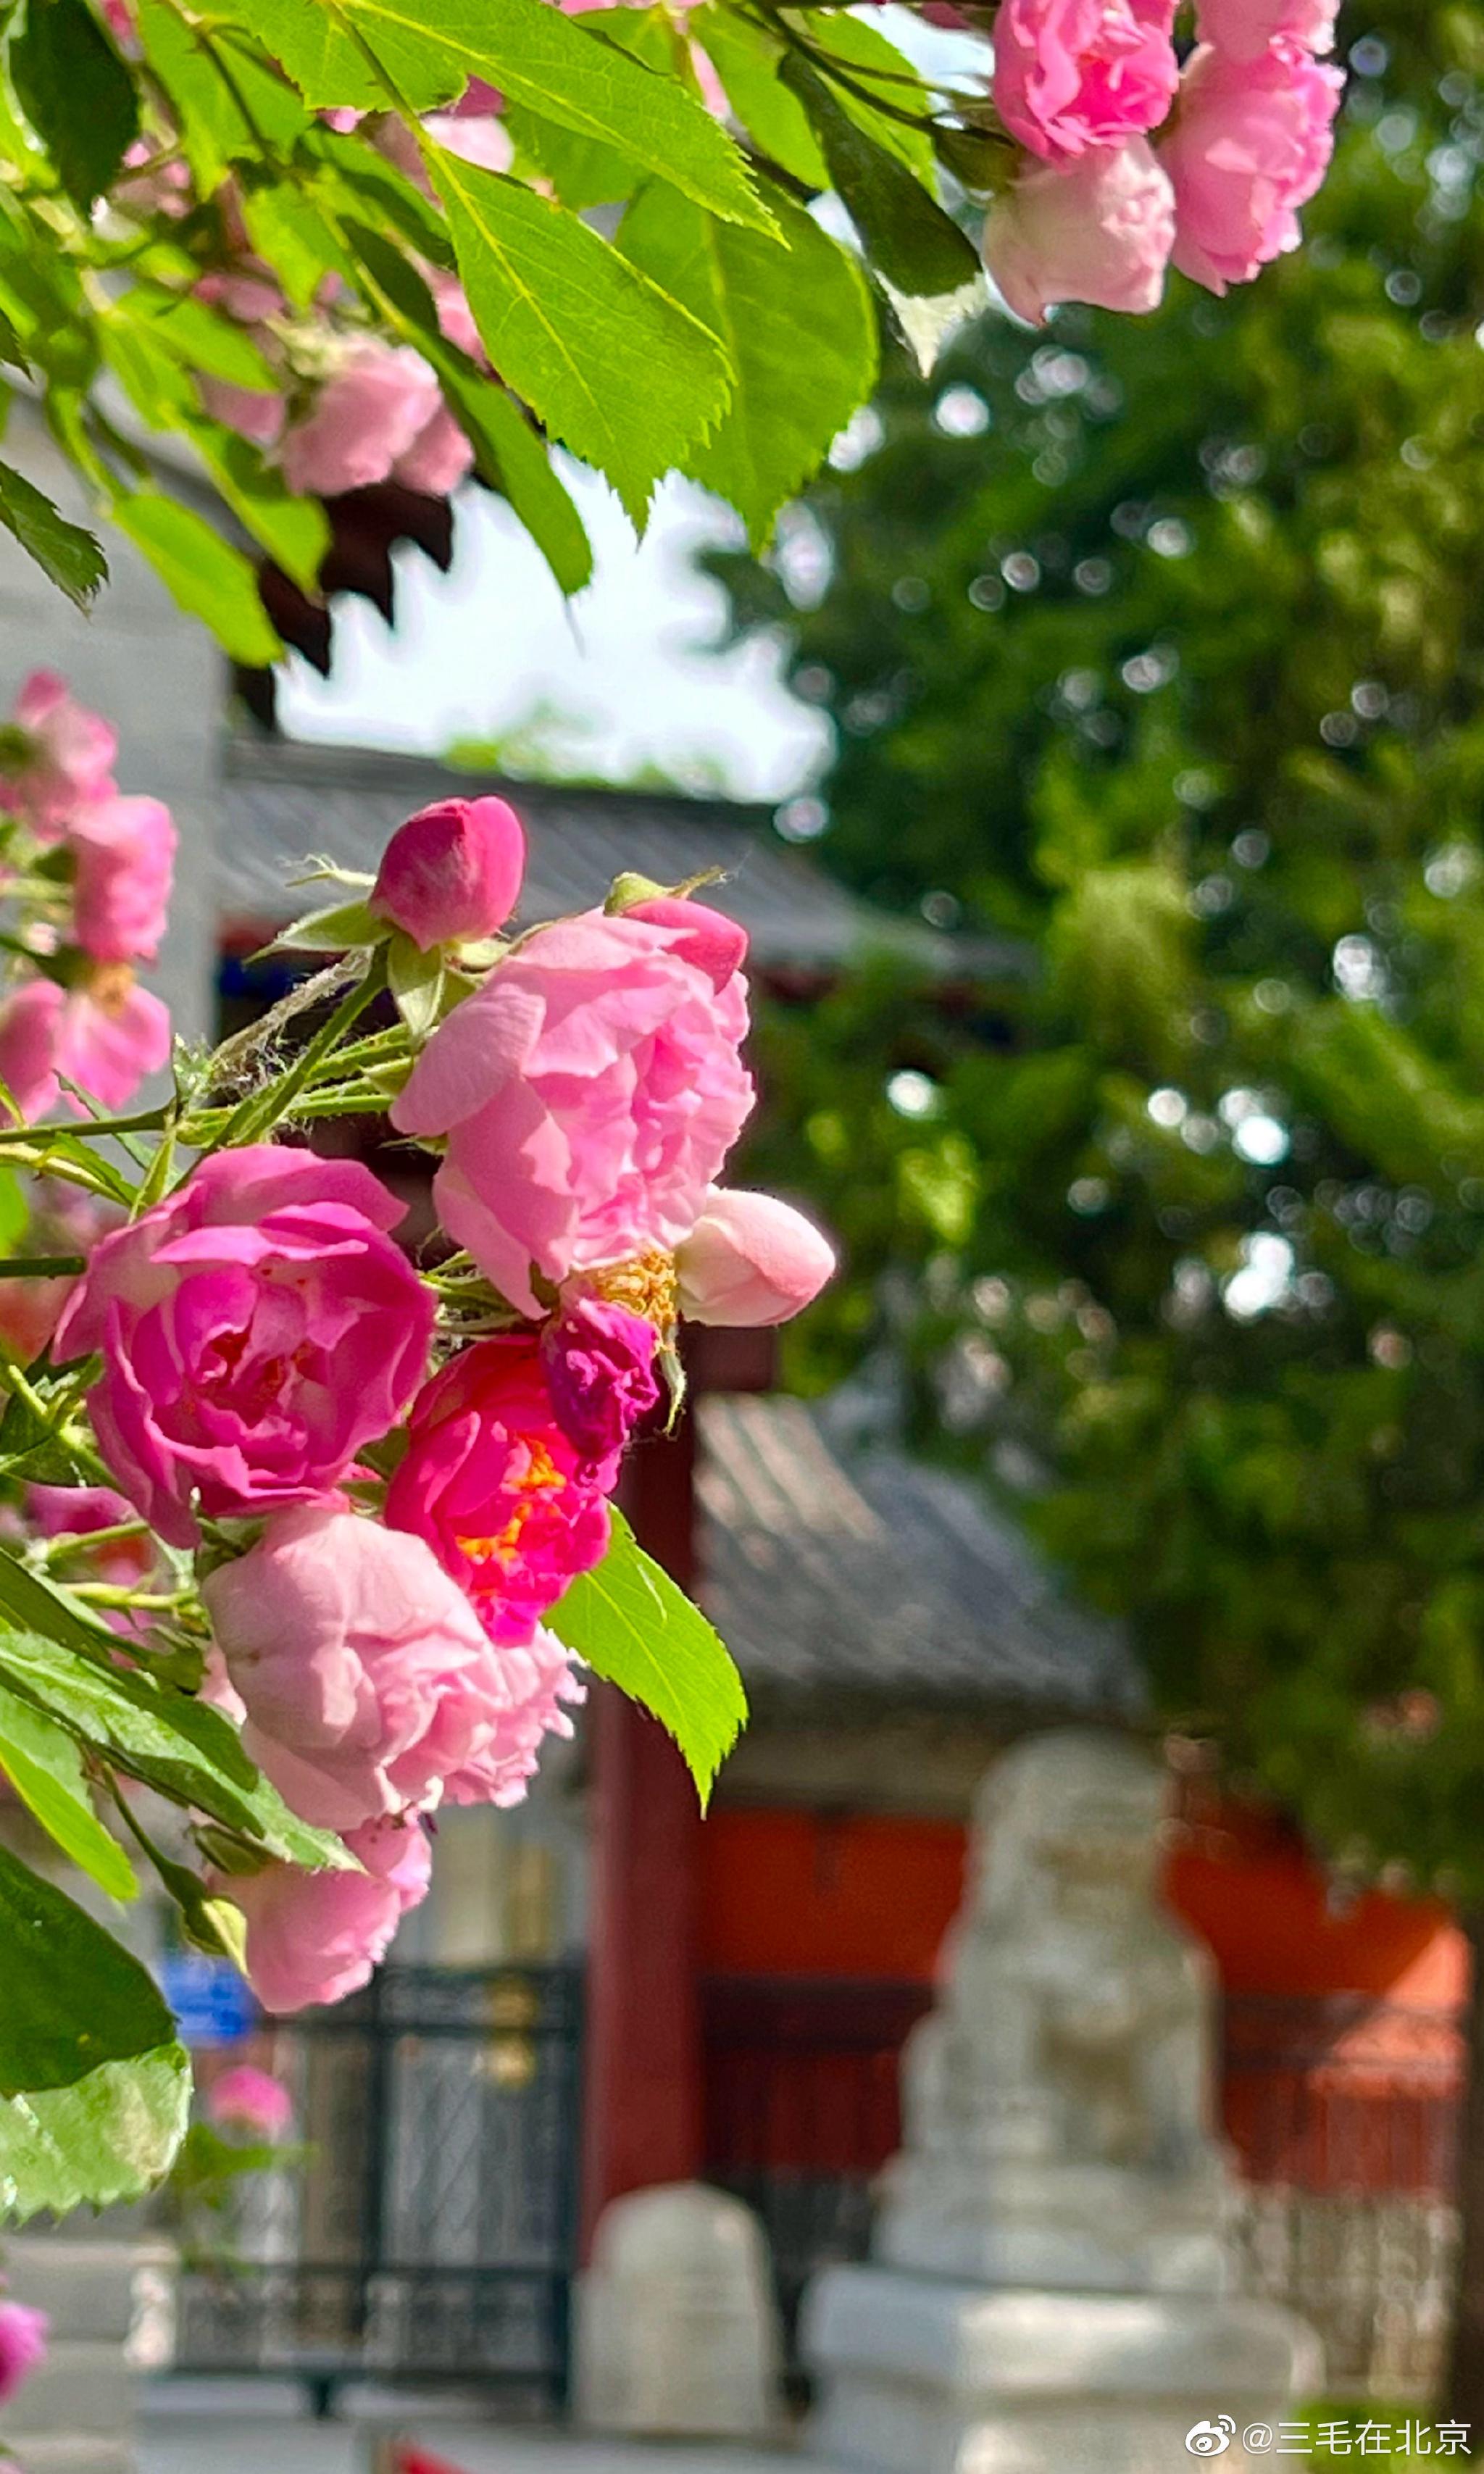 北京石刻艺术博物馆(五塔寺)蔷薇花开